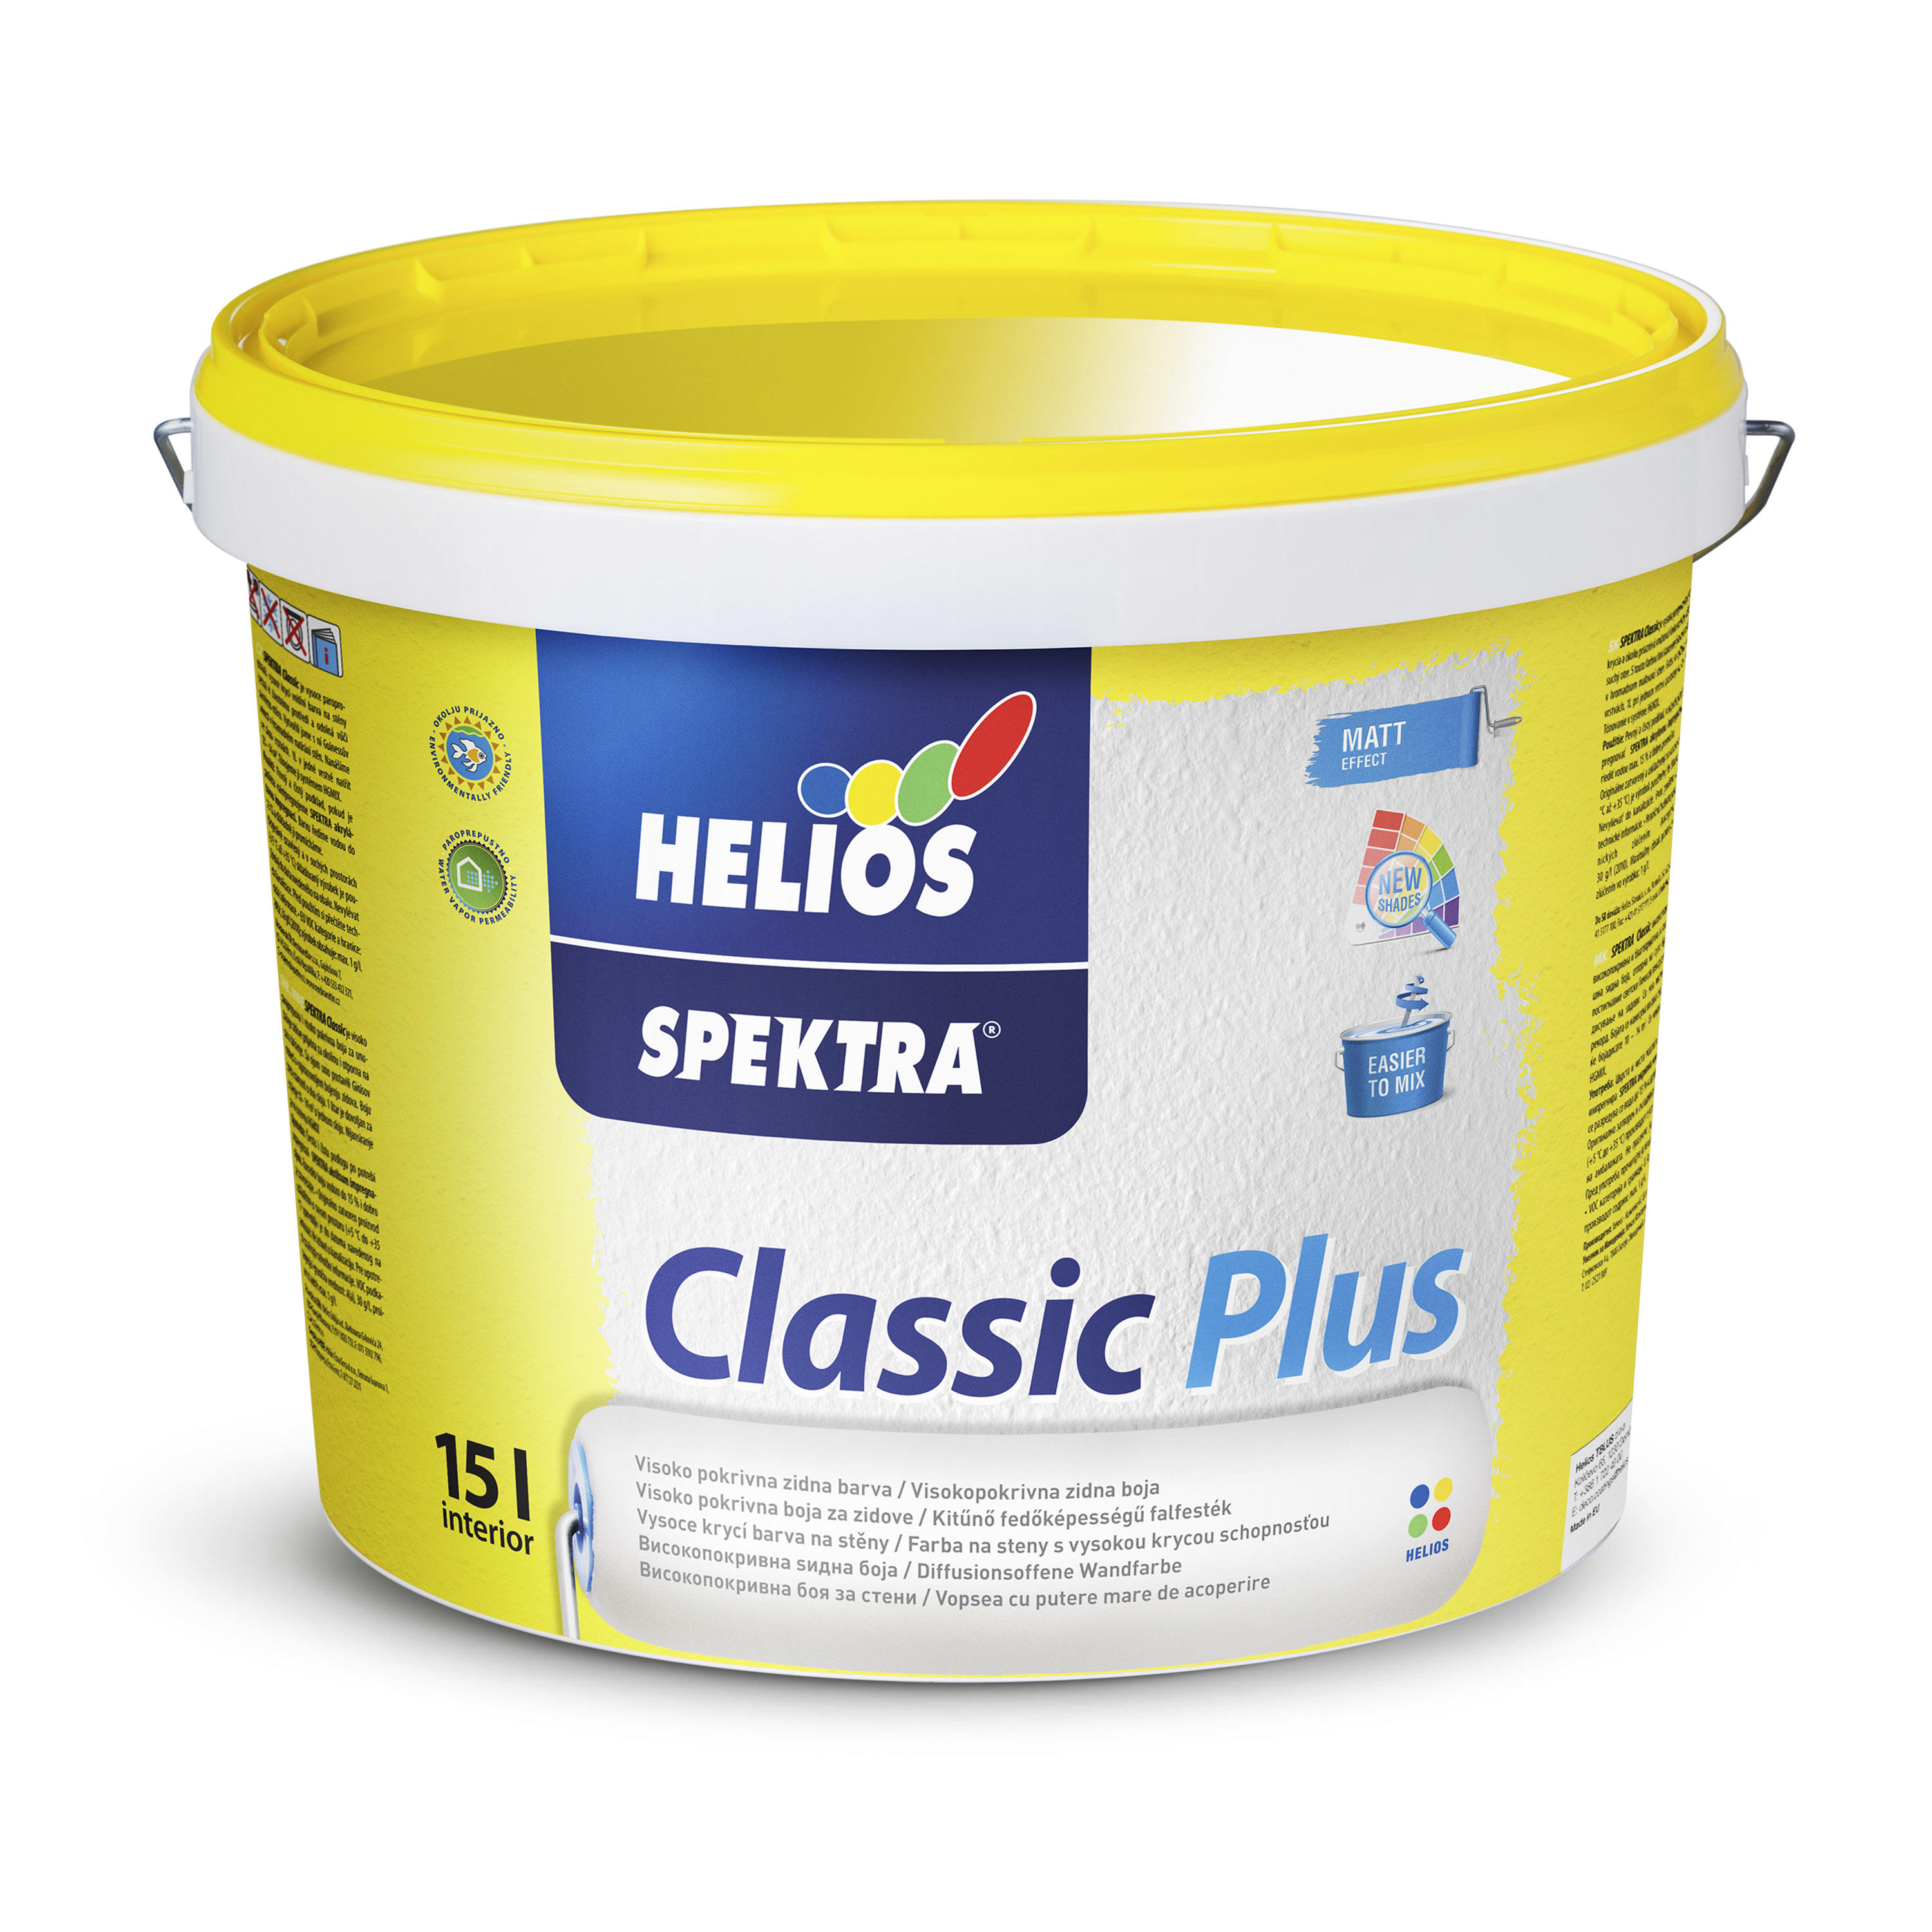 Helios Spektra classic Plus R15-2,2L